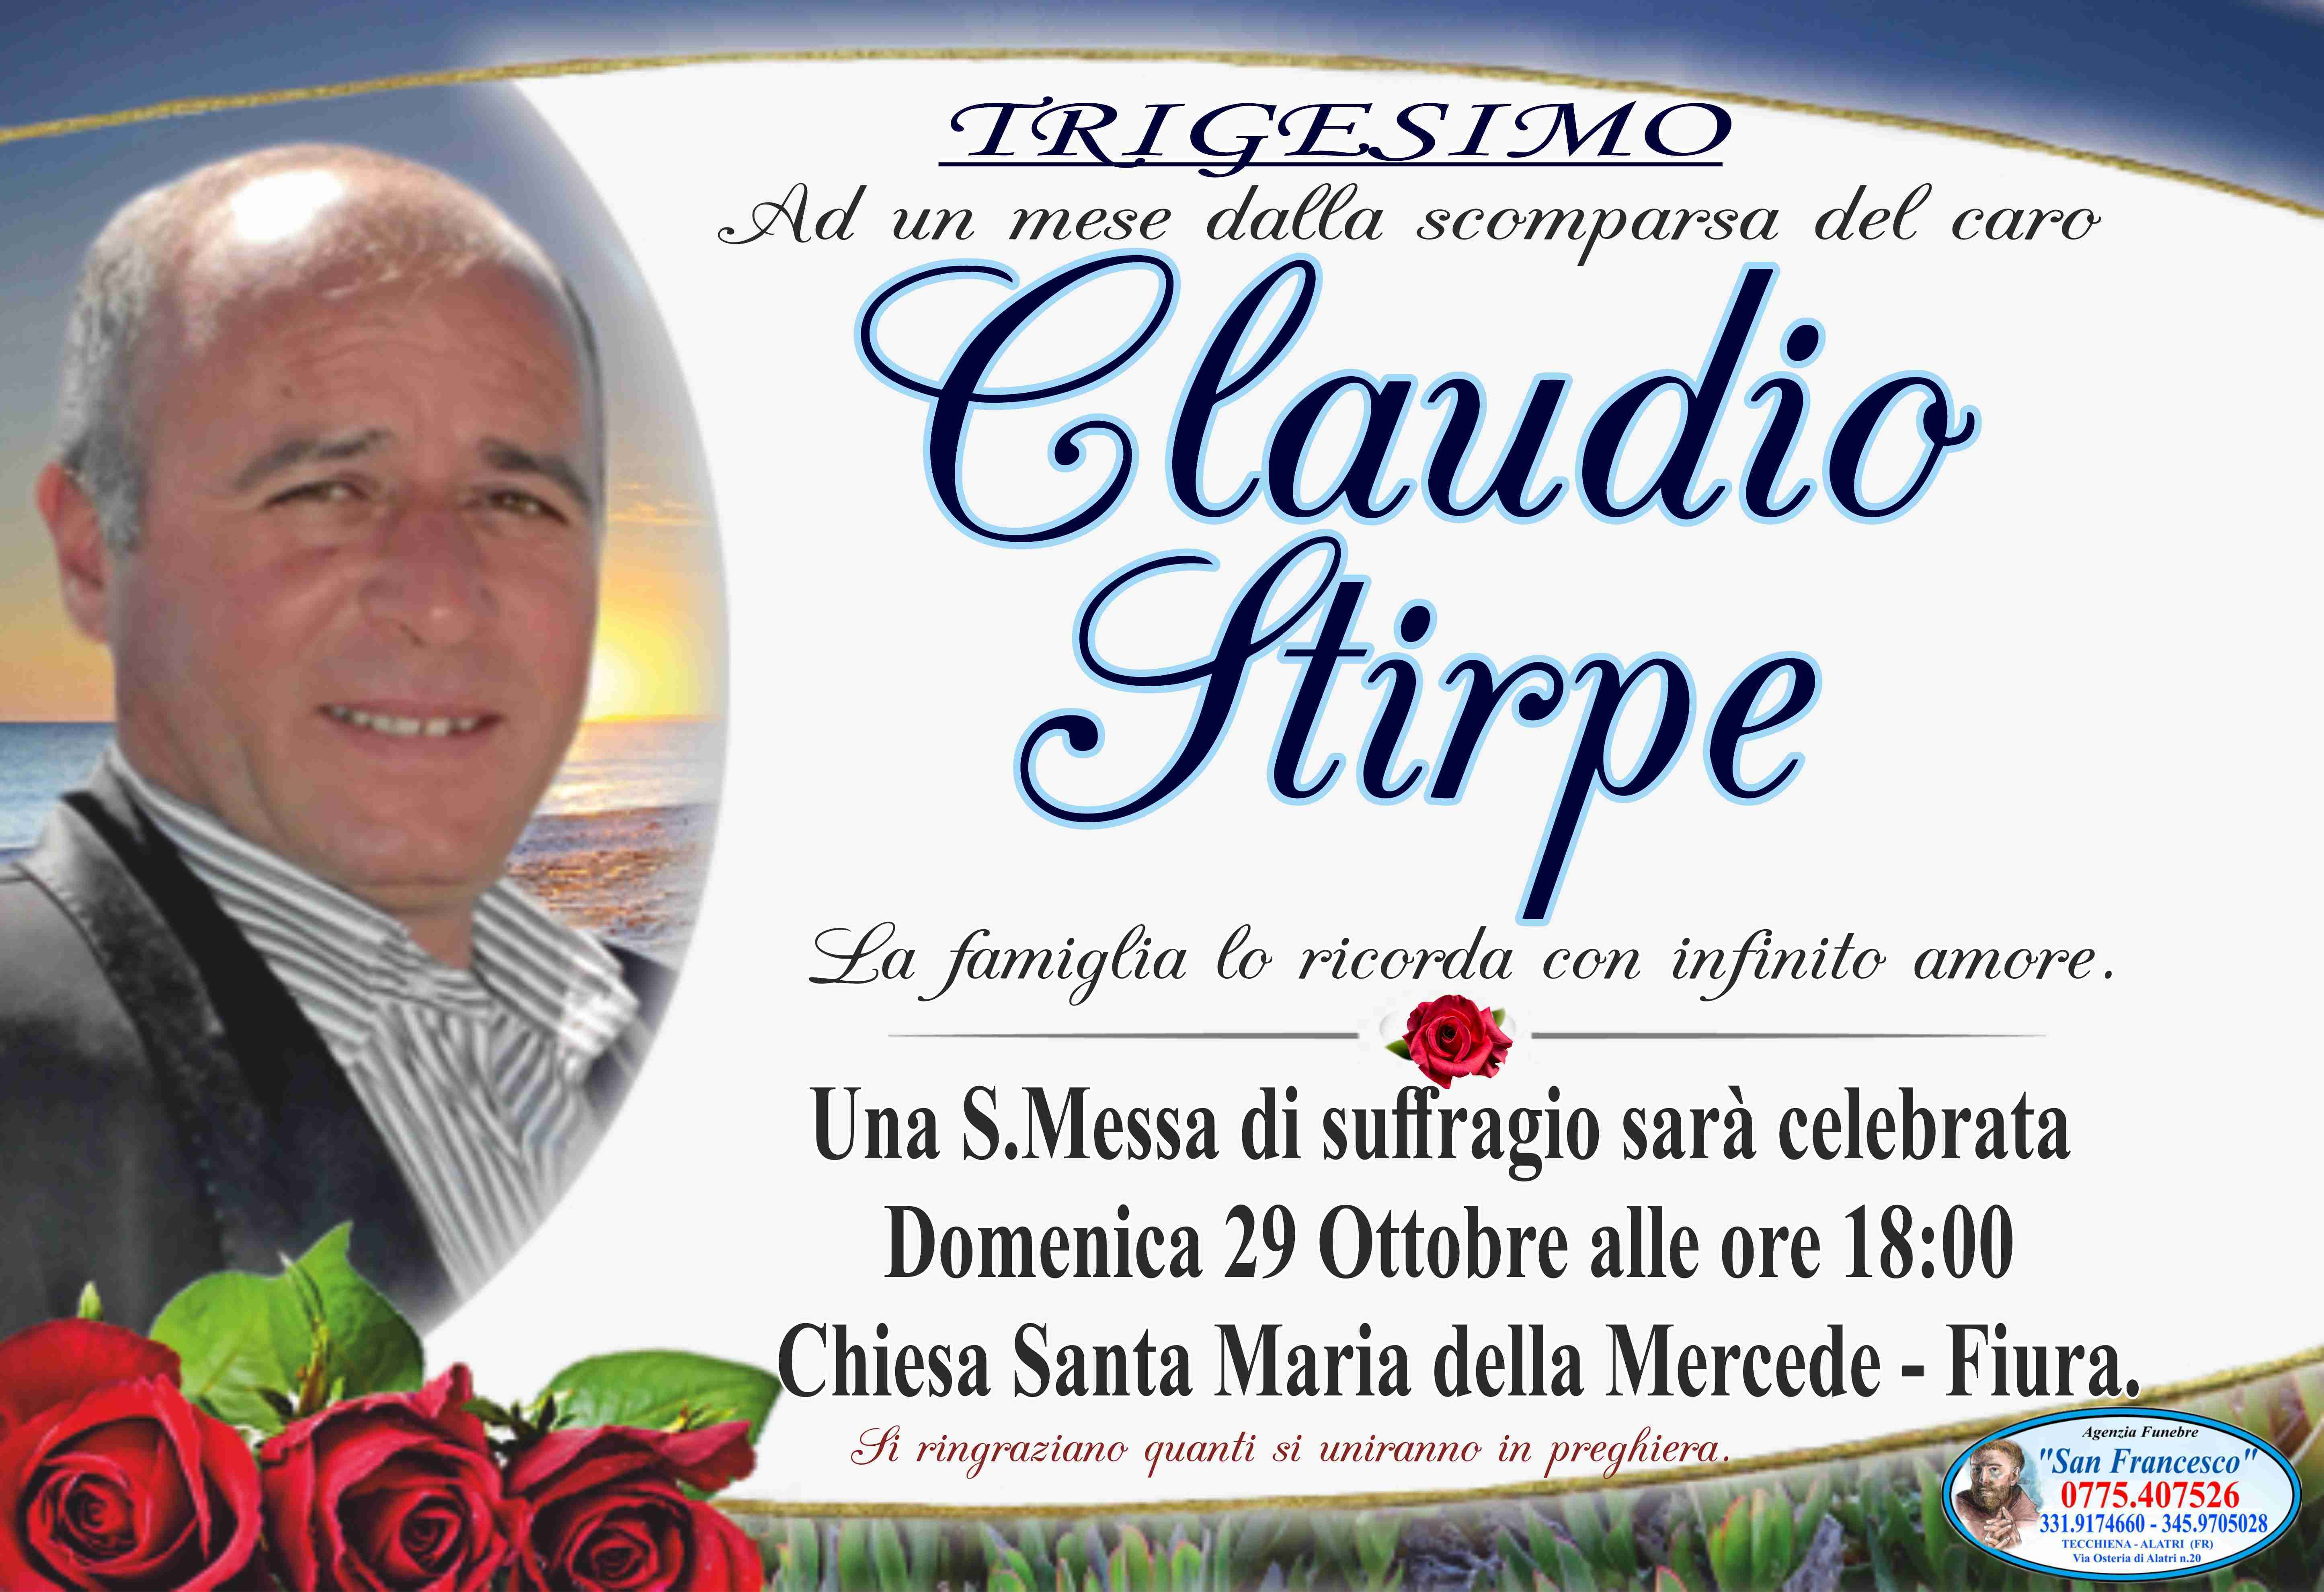 Claudio Stirpe